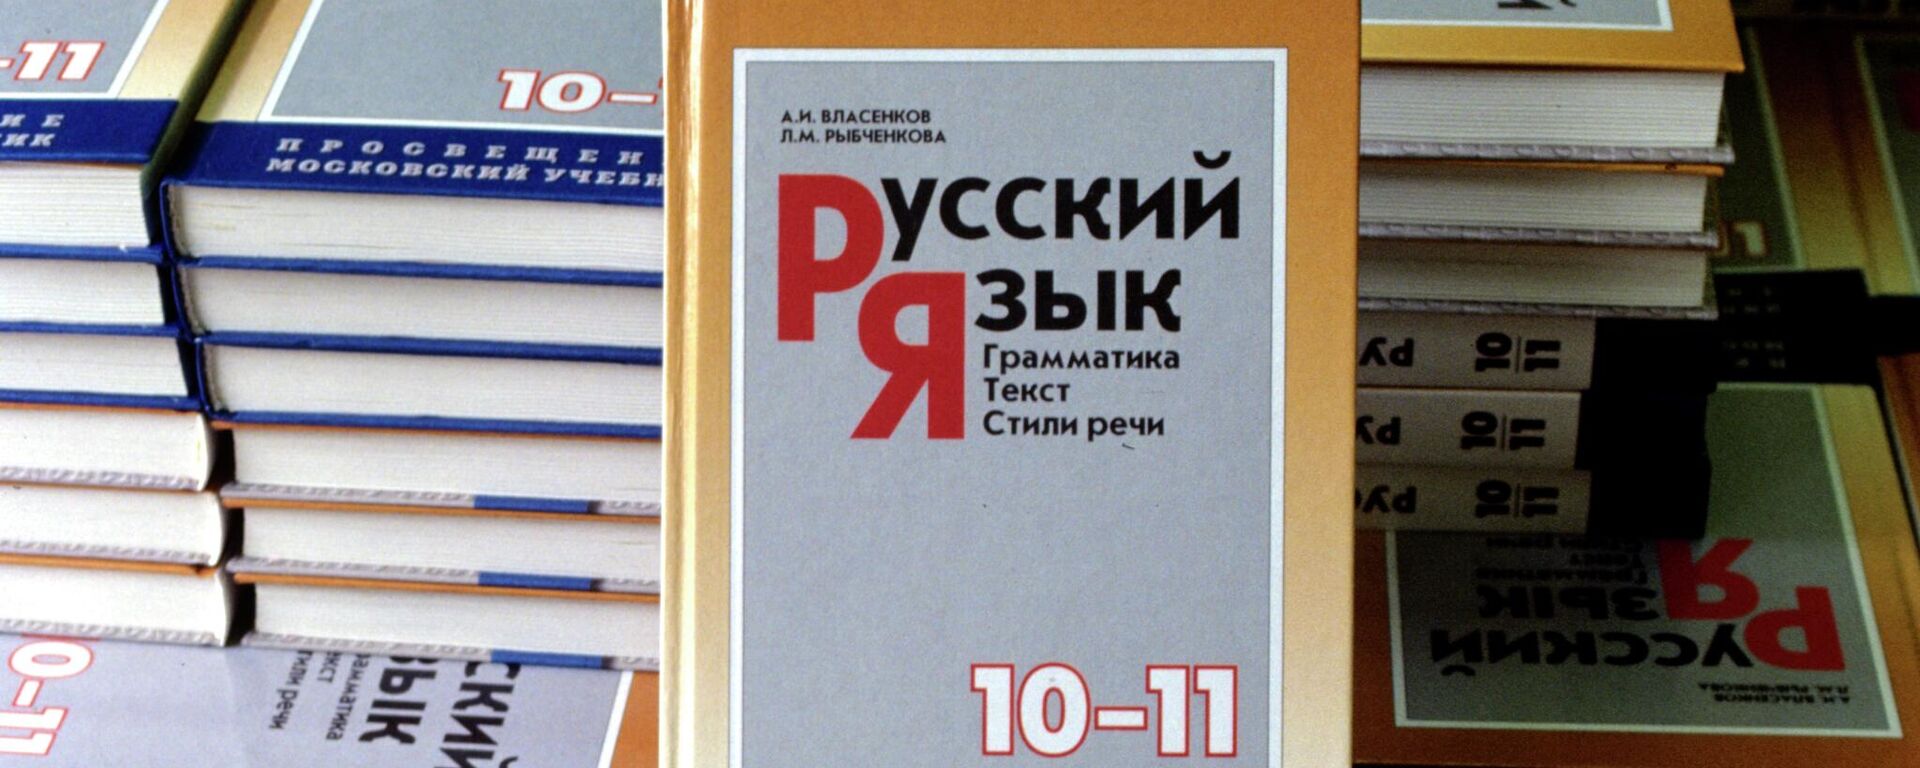 Учебник русского языка 10-11 класса - Sputnik Абхазия, 1920, 07.04.2022